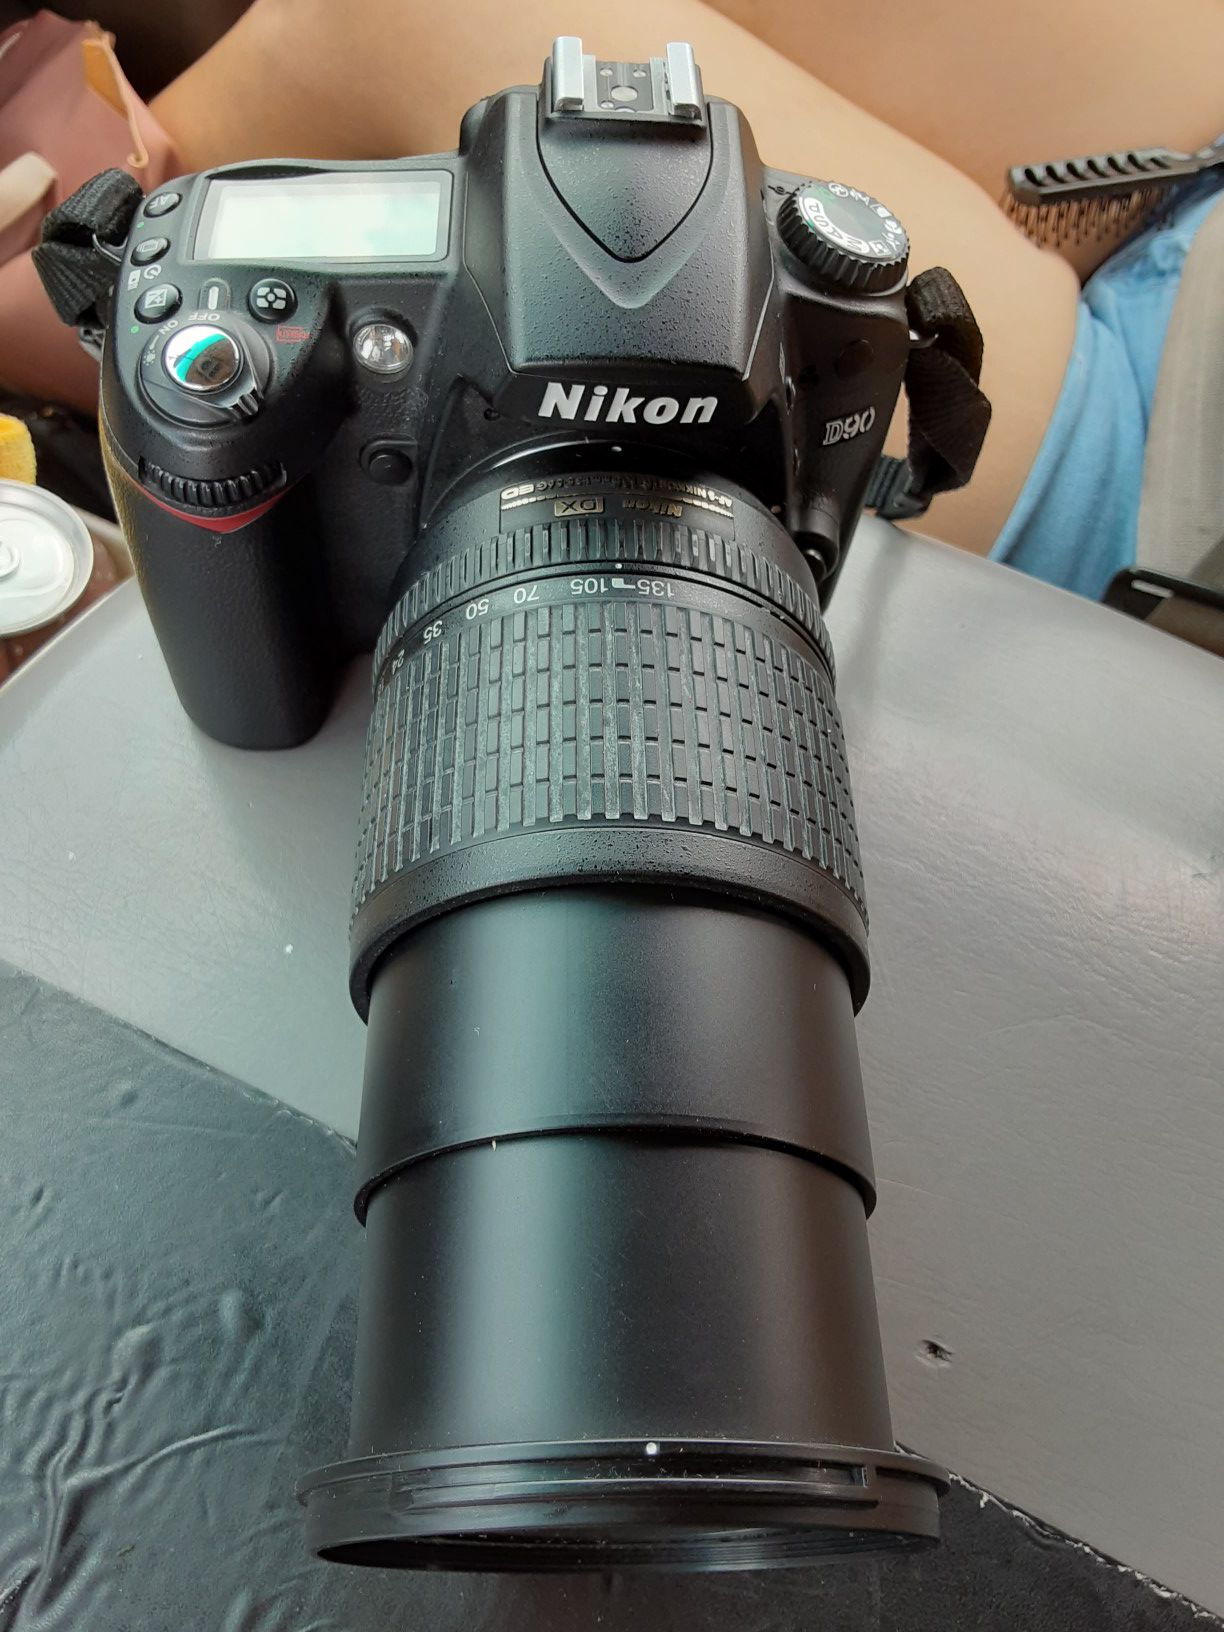 Nixon D90 digital camera